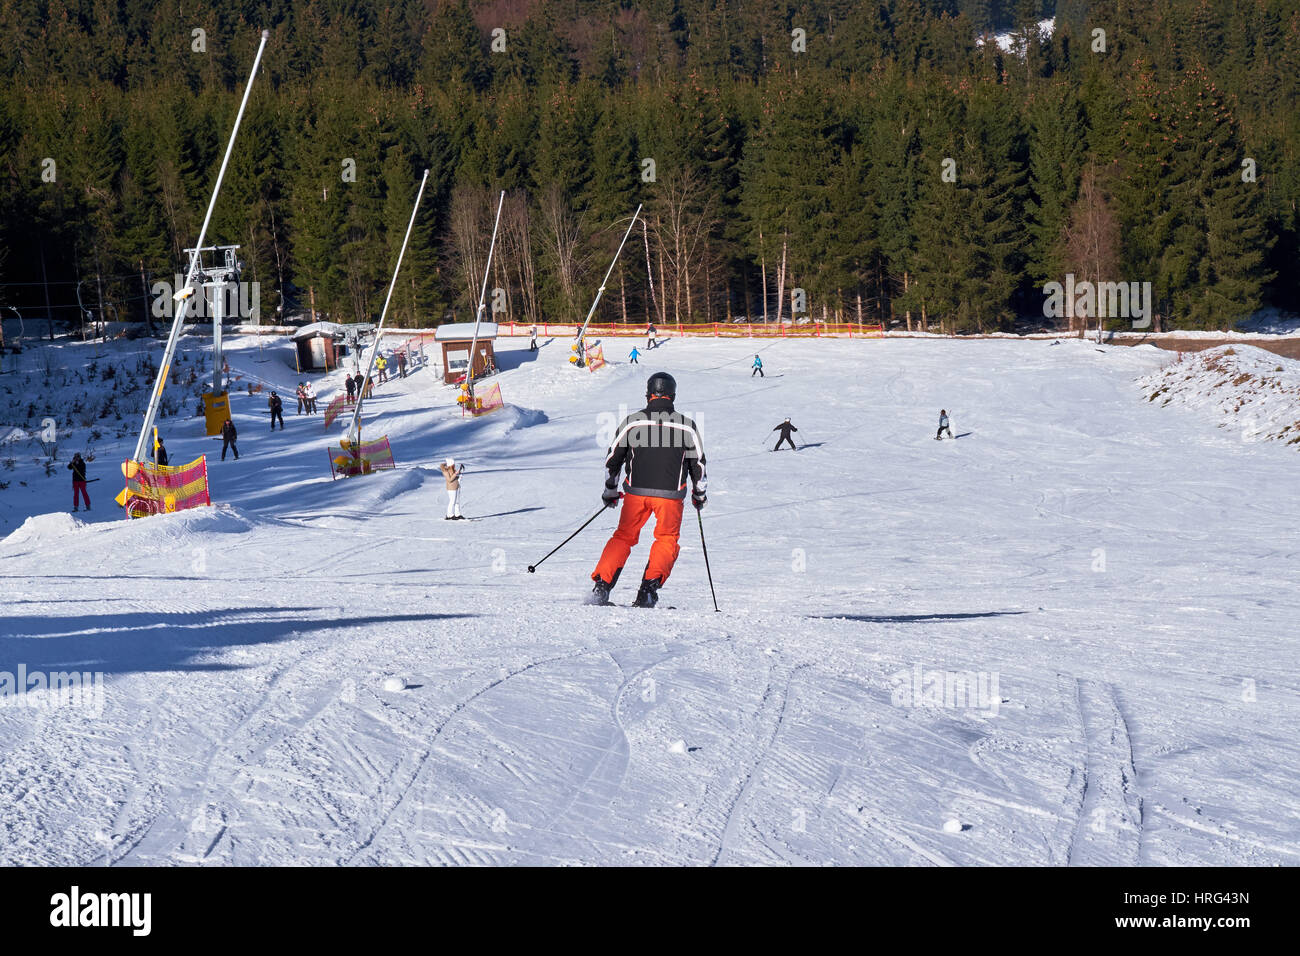 WINTERBERG, Deutschland - 15. Februar 2017: Mann trägt orange Skihose auf seinem Weg nach unten eine Piste in Ski-Karussell Winterberg Stockfoto